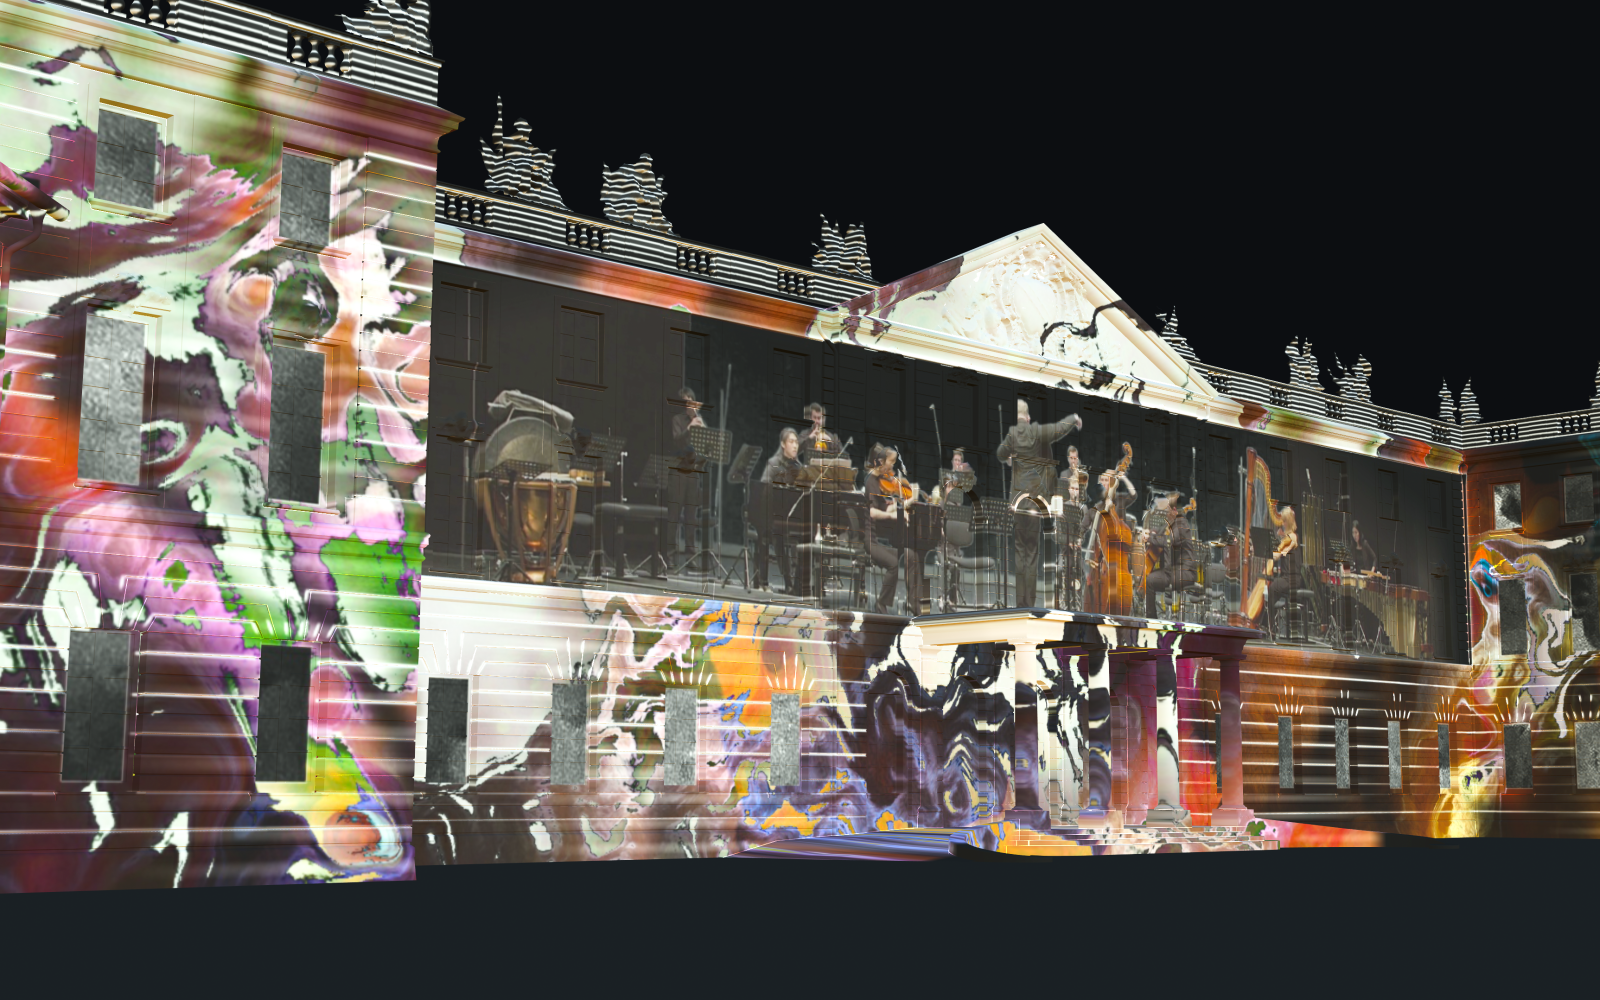 Auf der Karlsruher Schlossfassade ist ein Projection Mapping zu sehen, das in der Nacht leuchtet. Das Mapping zeigt bunte Farbwirbel, in deren Mitte ein Orchester spielt.